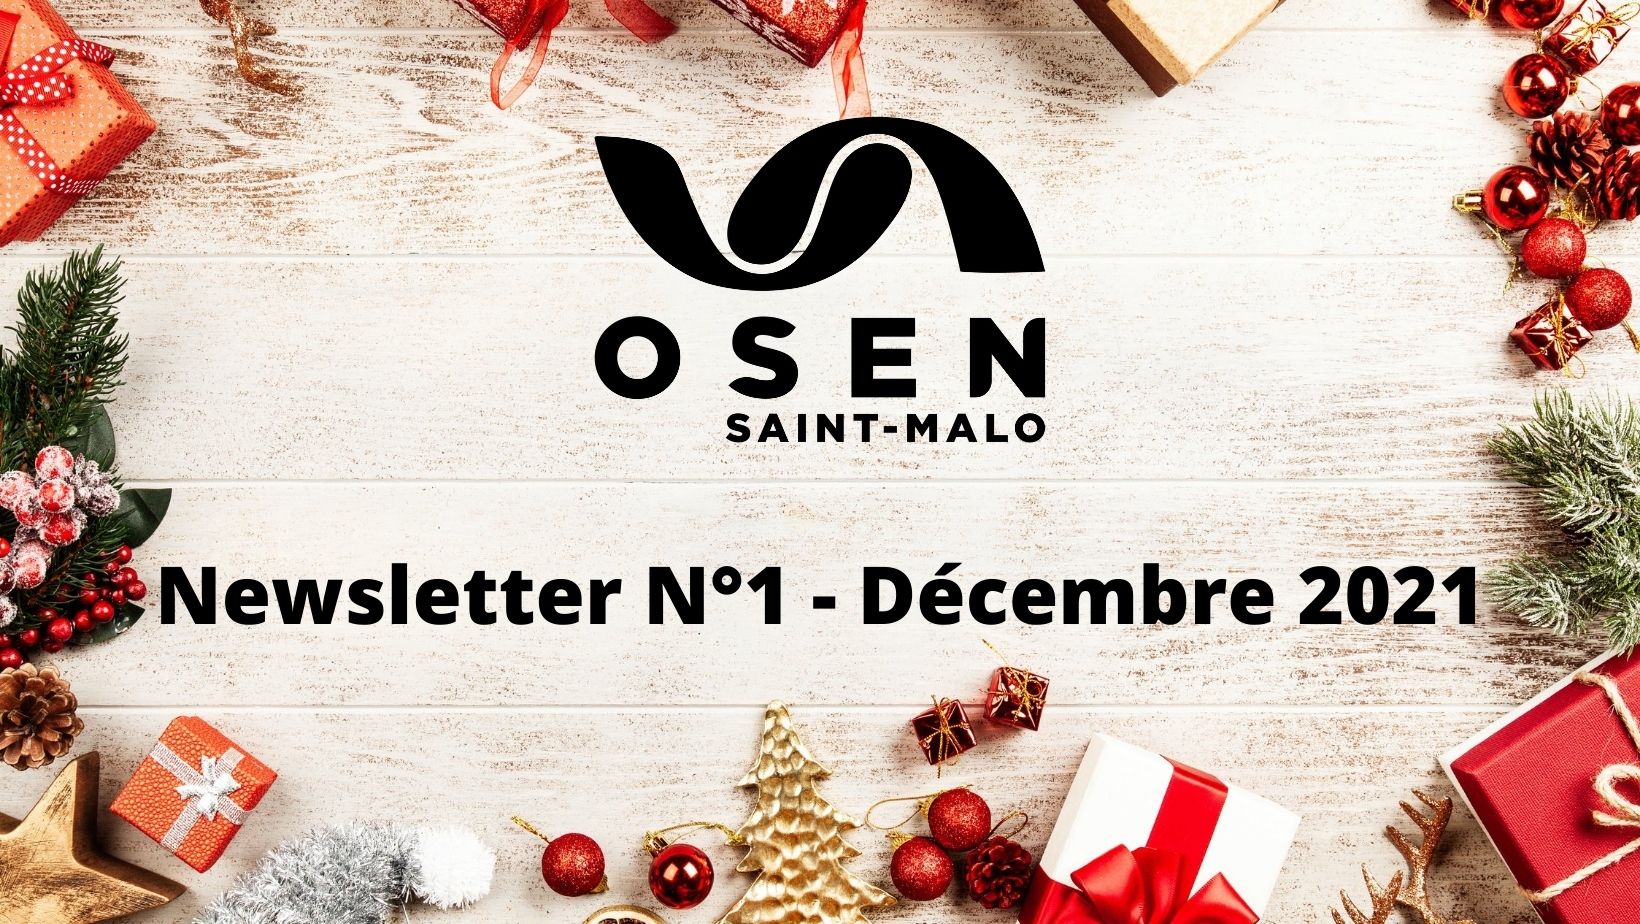 Newsletter N°1 OSEN Saint-Malo